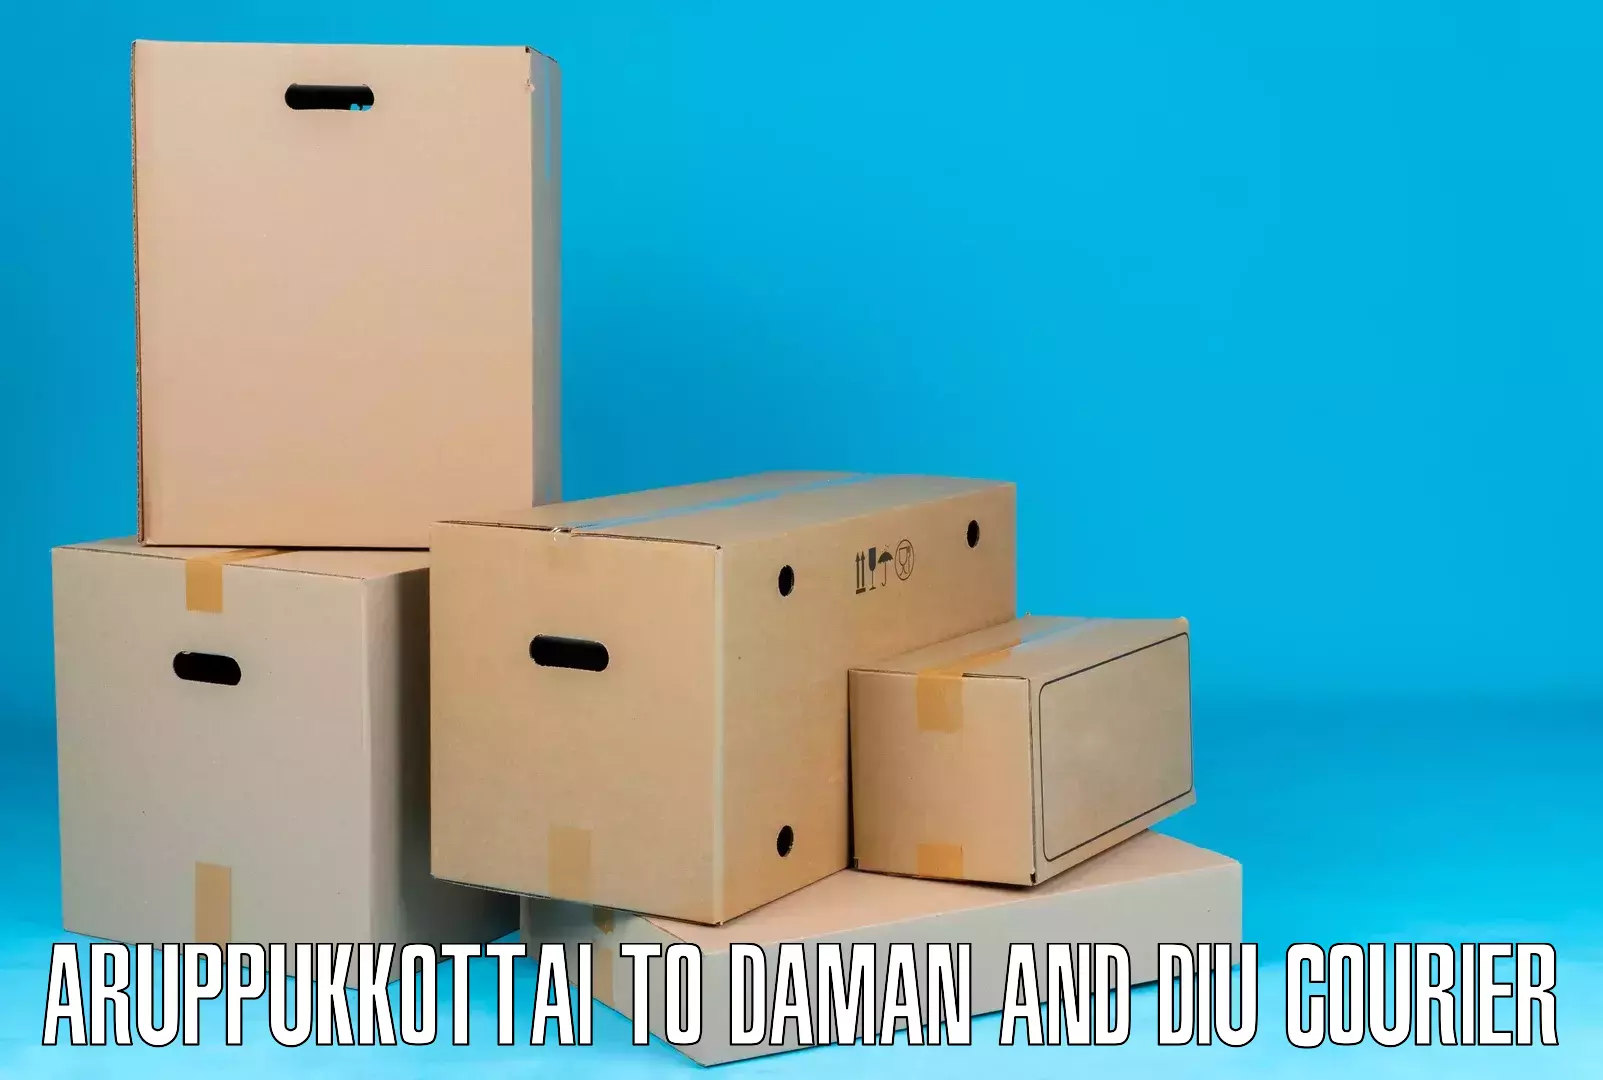 Express logistics providers Aruppukkottai to Daman and Diu